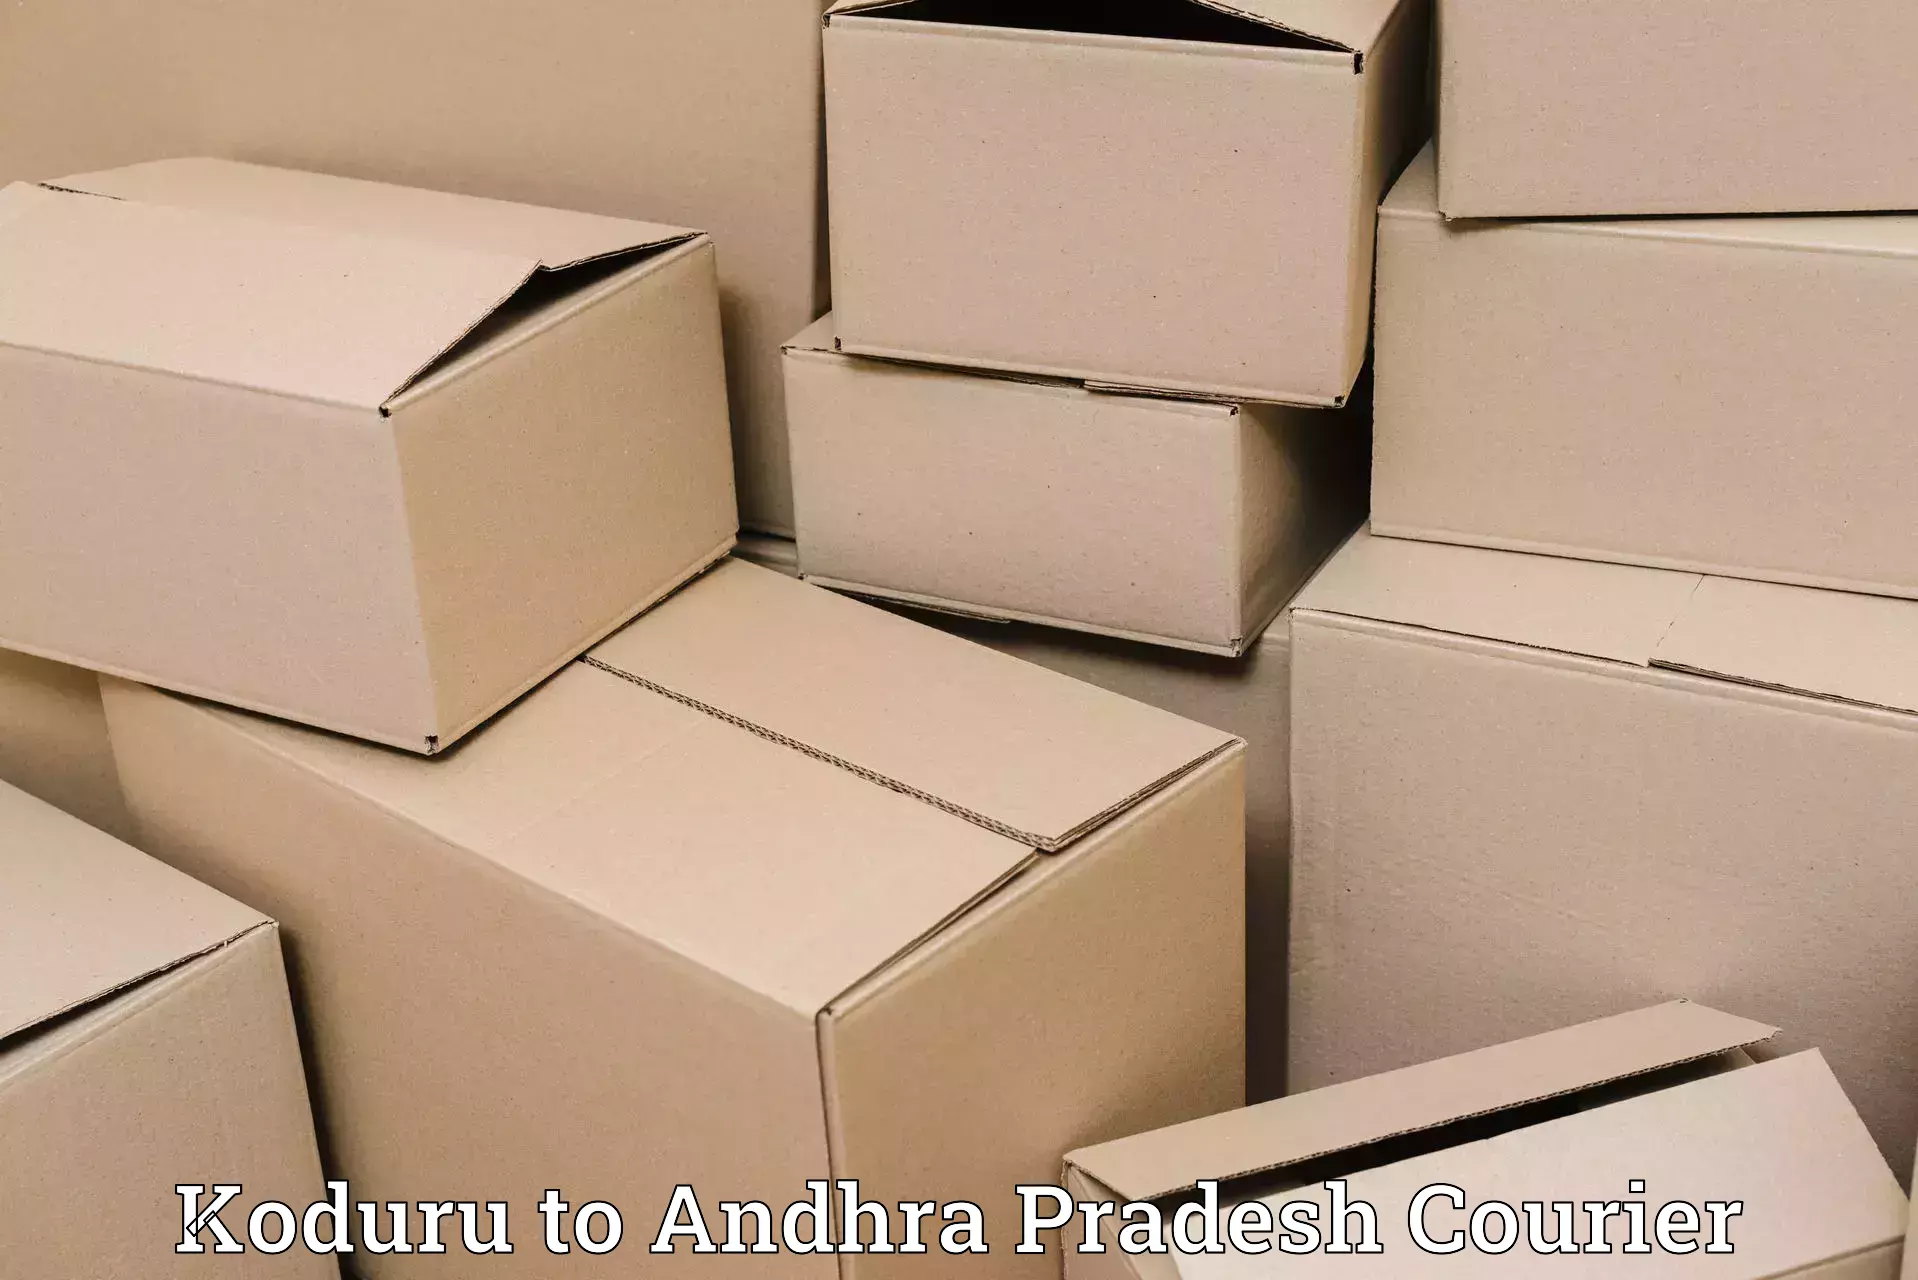 Round-the-clock parcel delivery Koduru to Kalyandurg